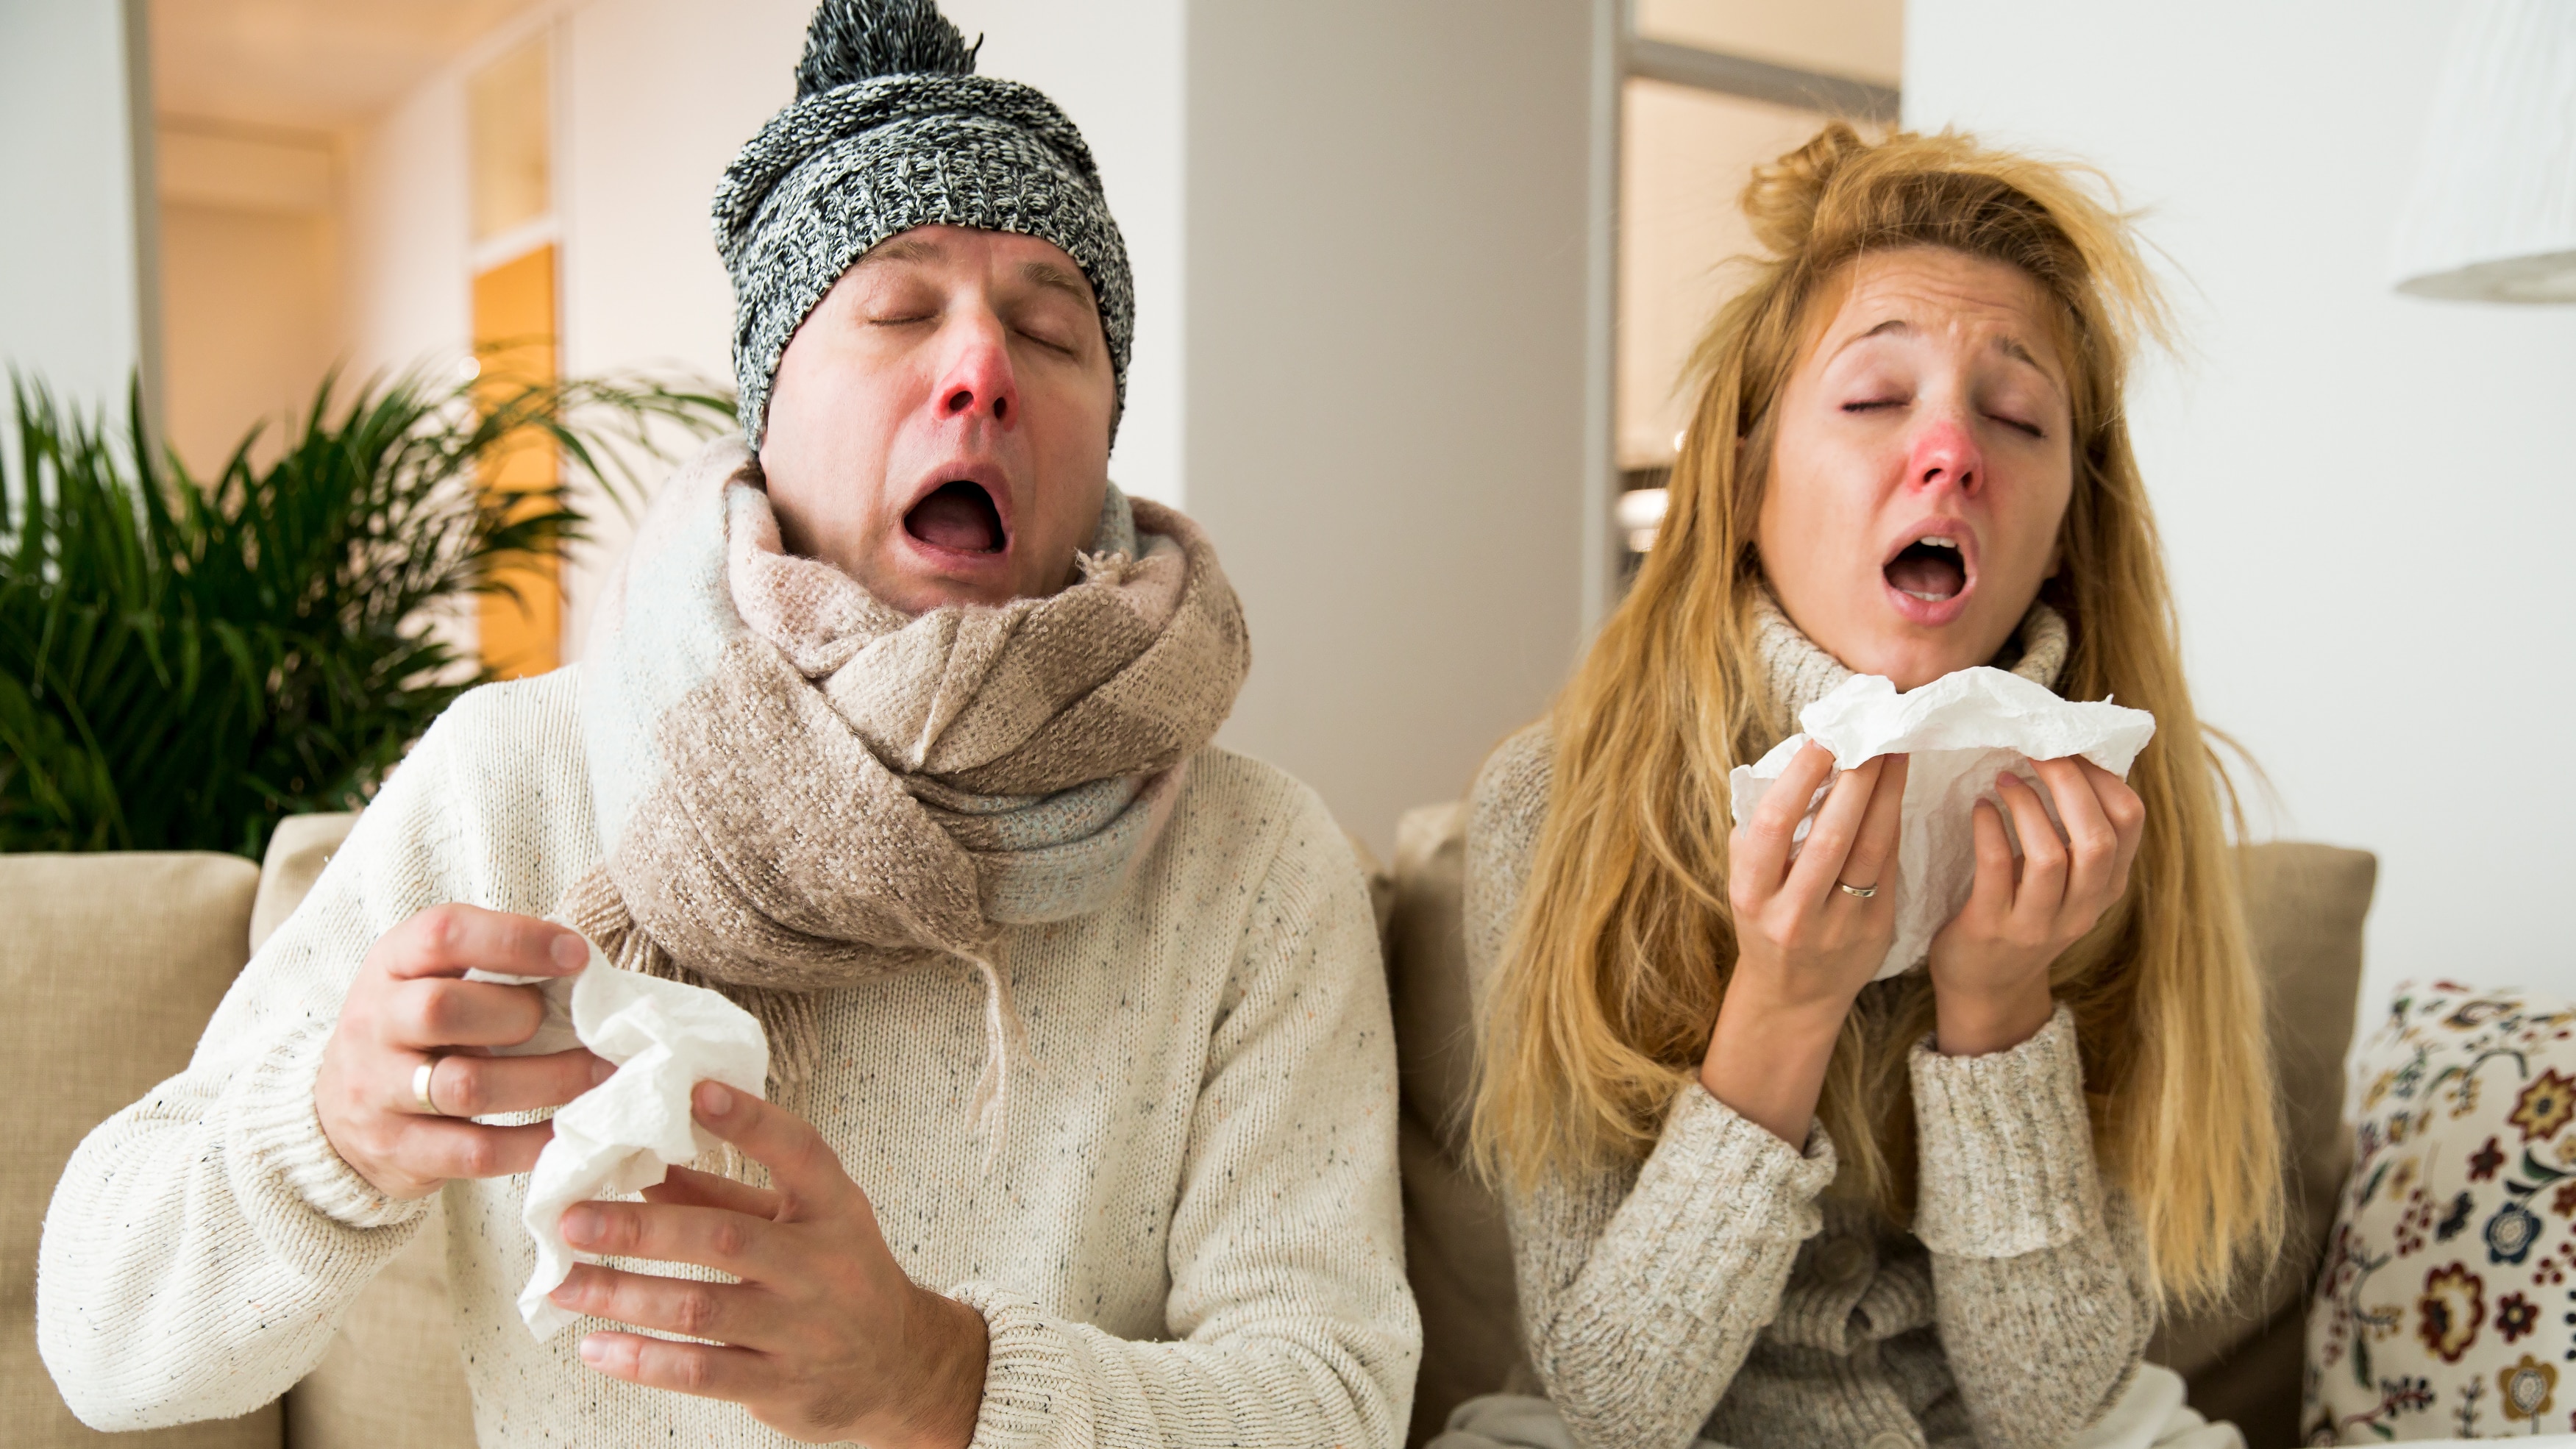 Rhume et grippe : des trucs et conseils pour en venir à bout